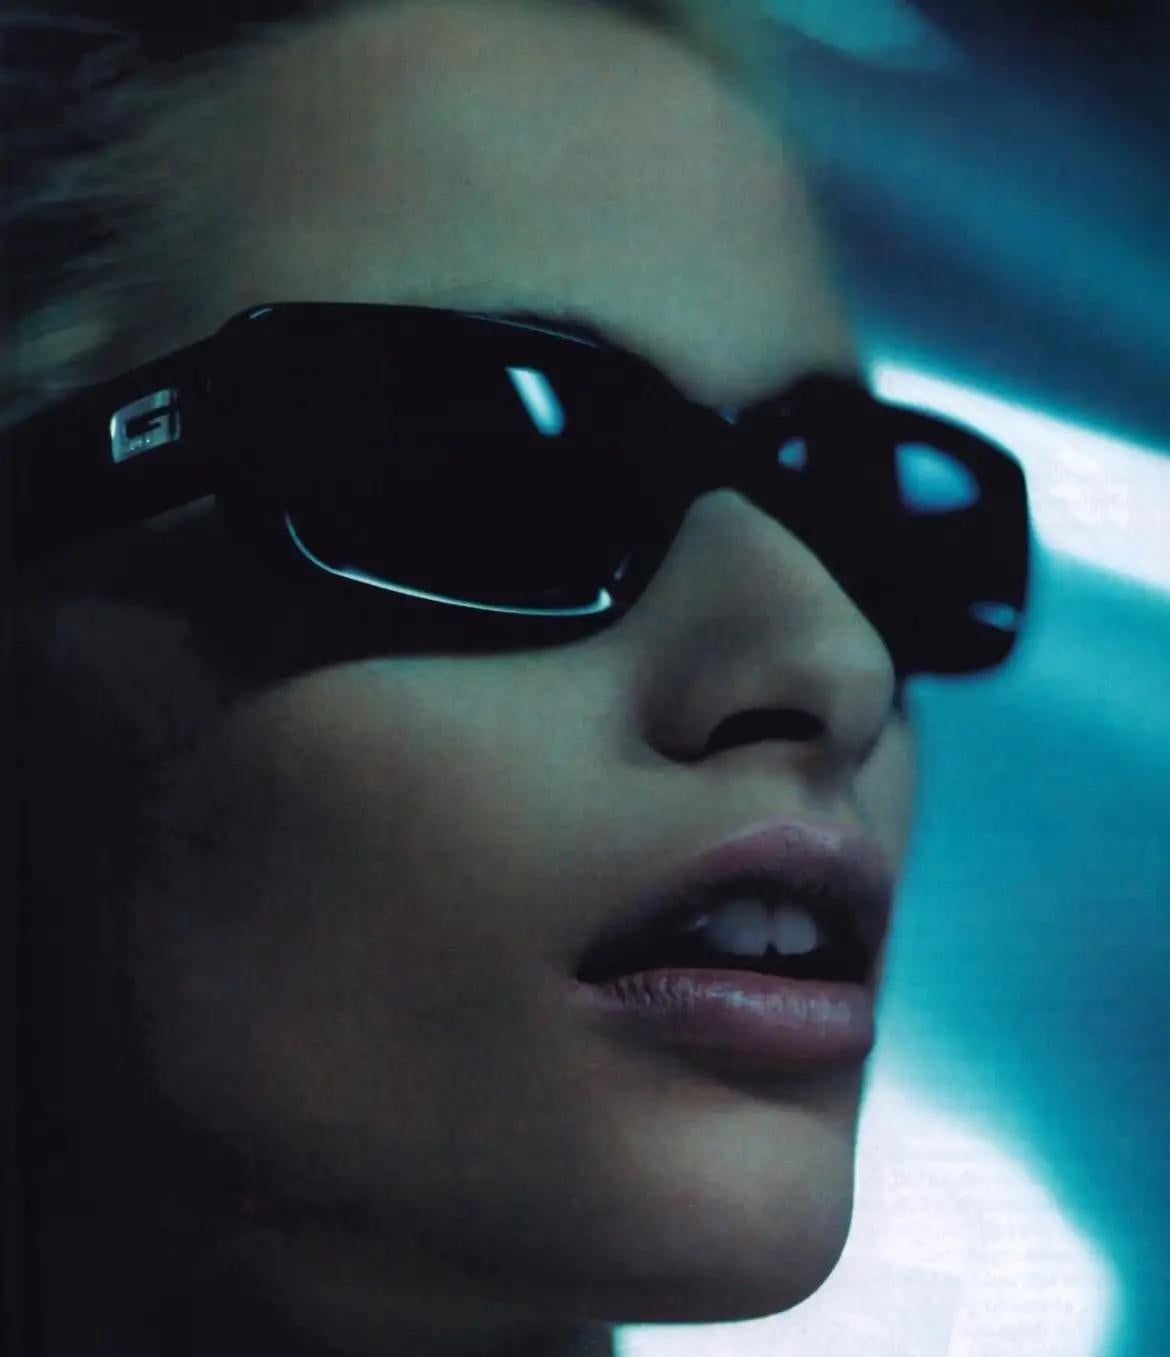 Wir präsentieren eine fabelhafte grüne Gucci-Sonnenbrille, entworfen von Tom Ford. Ähnliche ultra-schicke Sonnenbrillen wurden in der Werbekampagne für Brillen im Frühjahr/Sommer 1998 hervorgehoben. Diese Sonnenbrille mit dem quadratischen Gucci 'G'